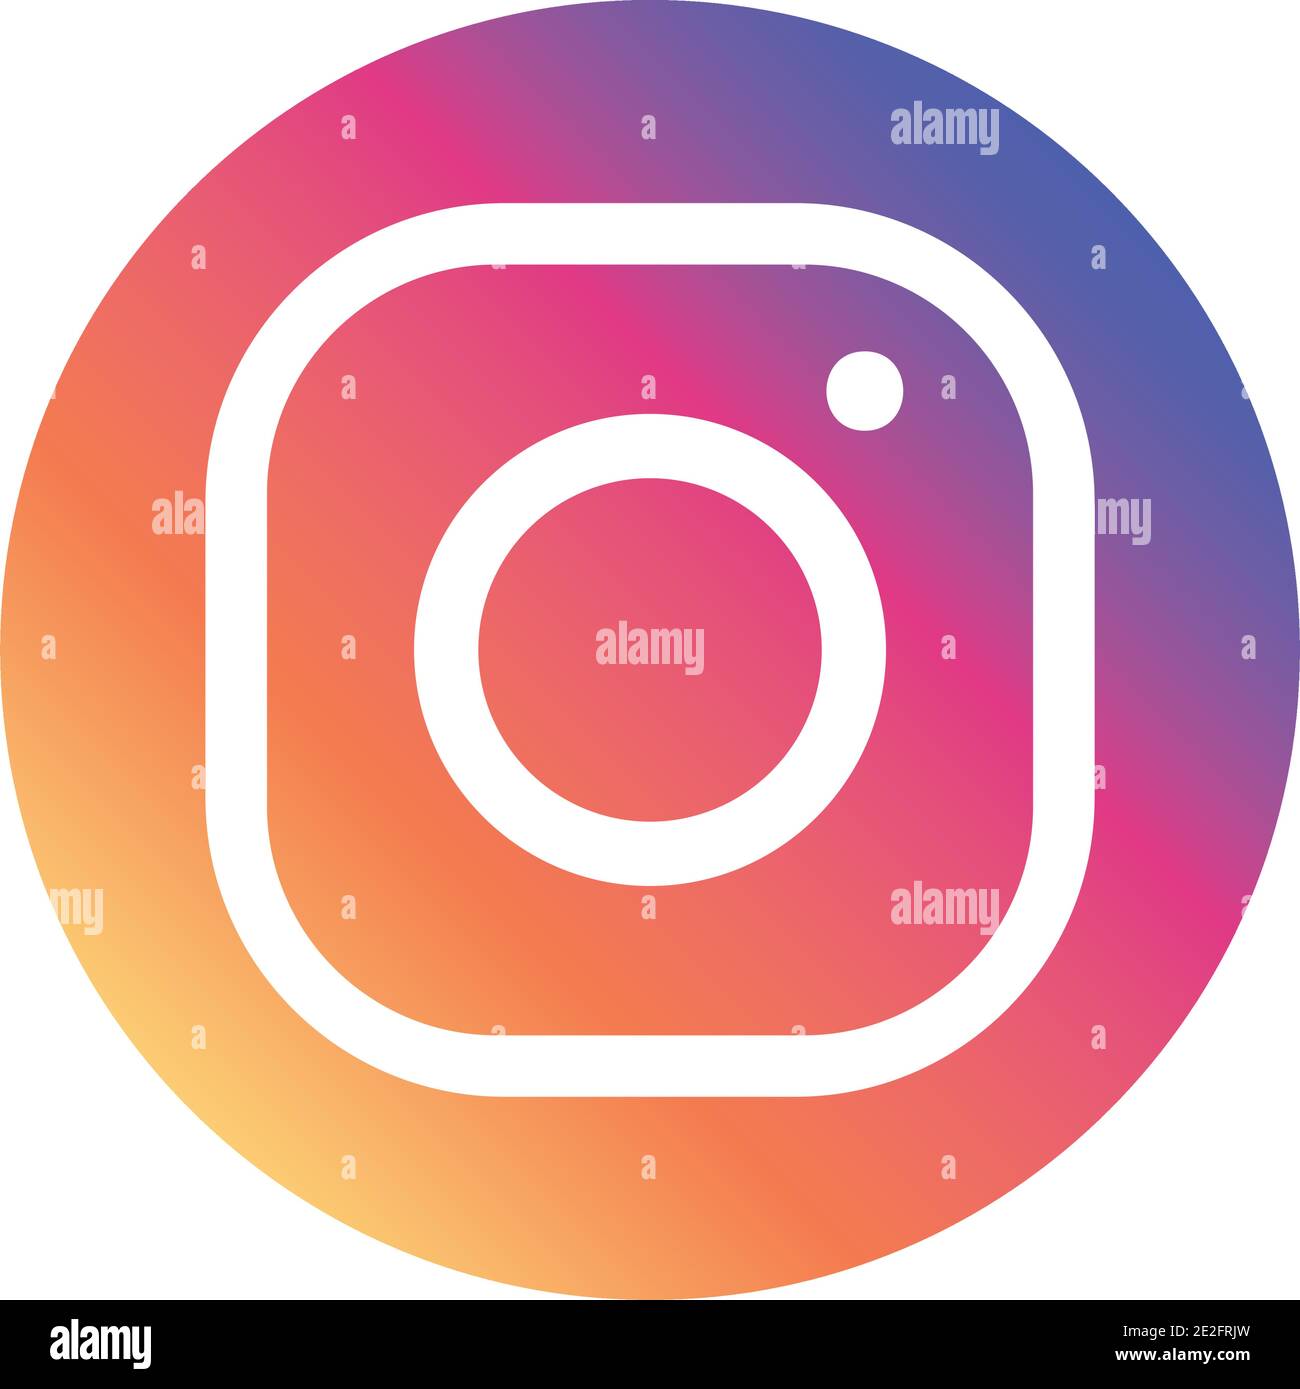 My Instagram Icon  Instagram logo, Instagram icons, Instagram design